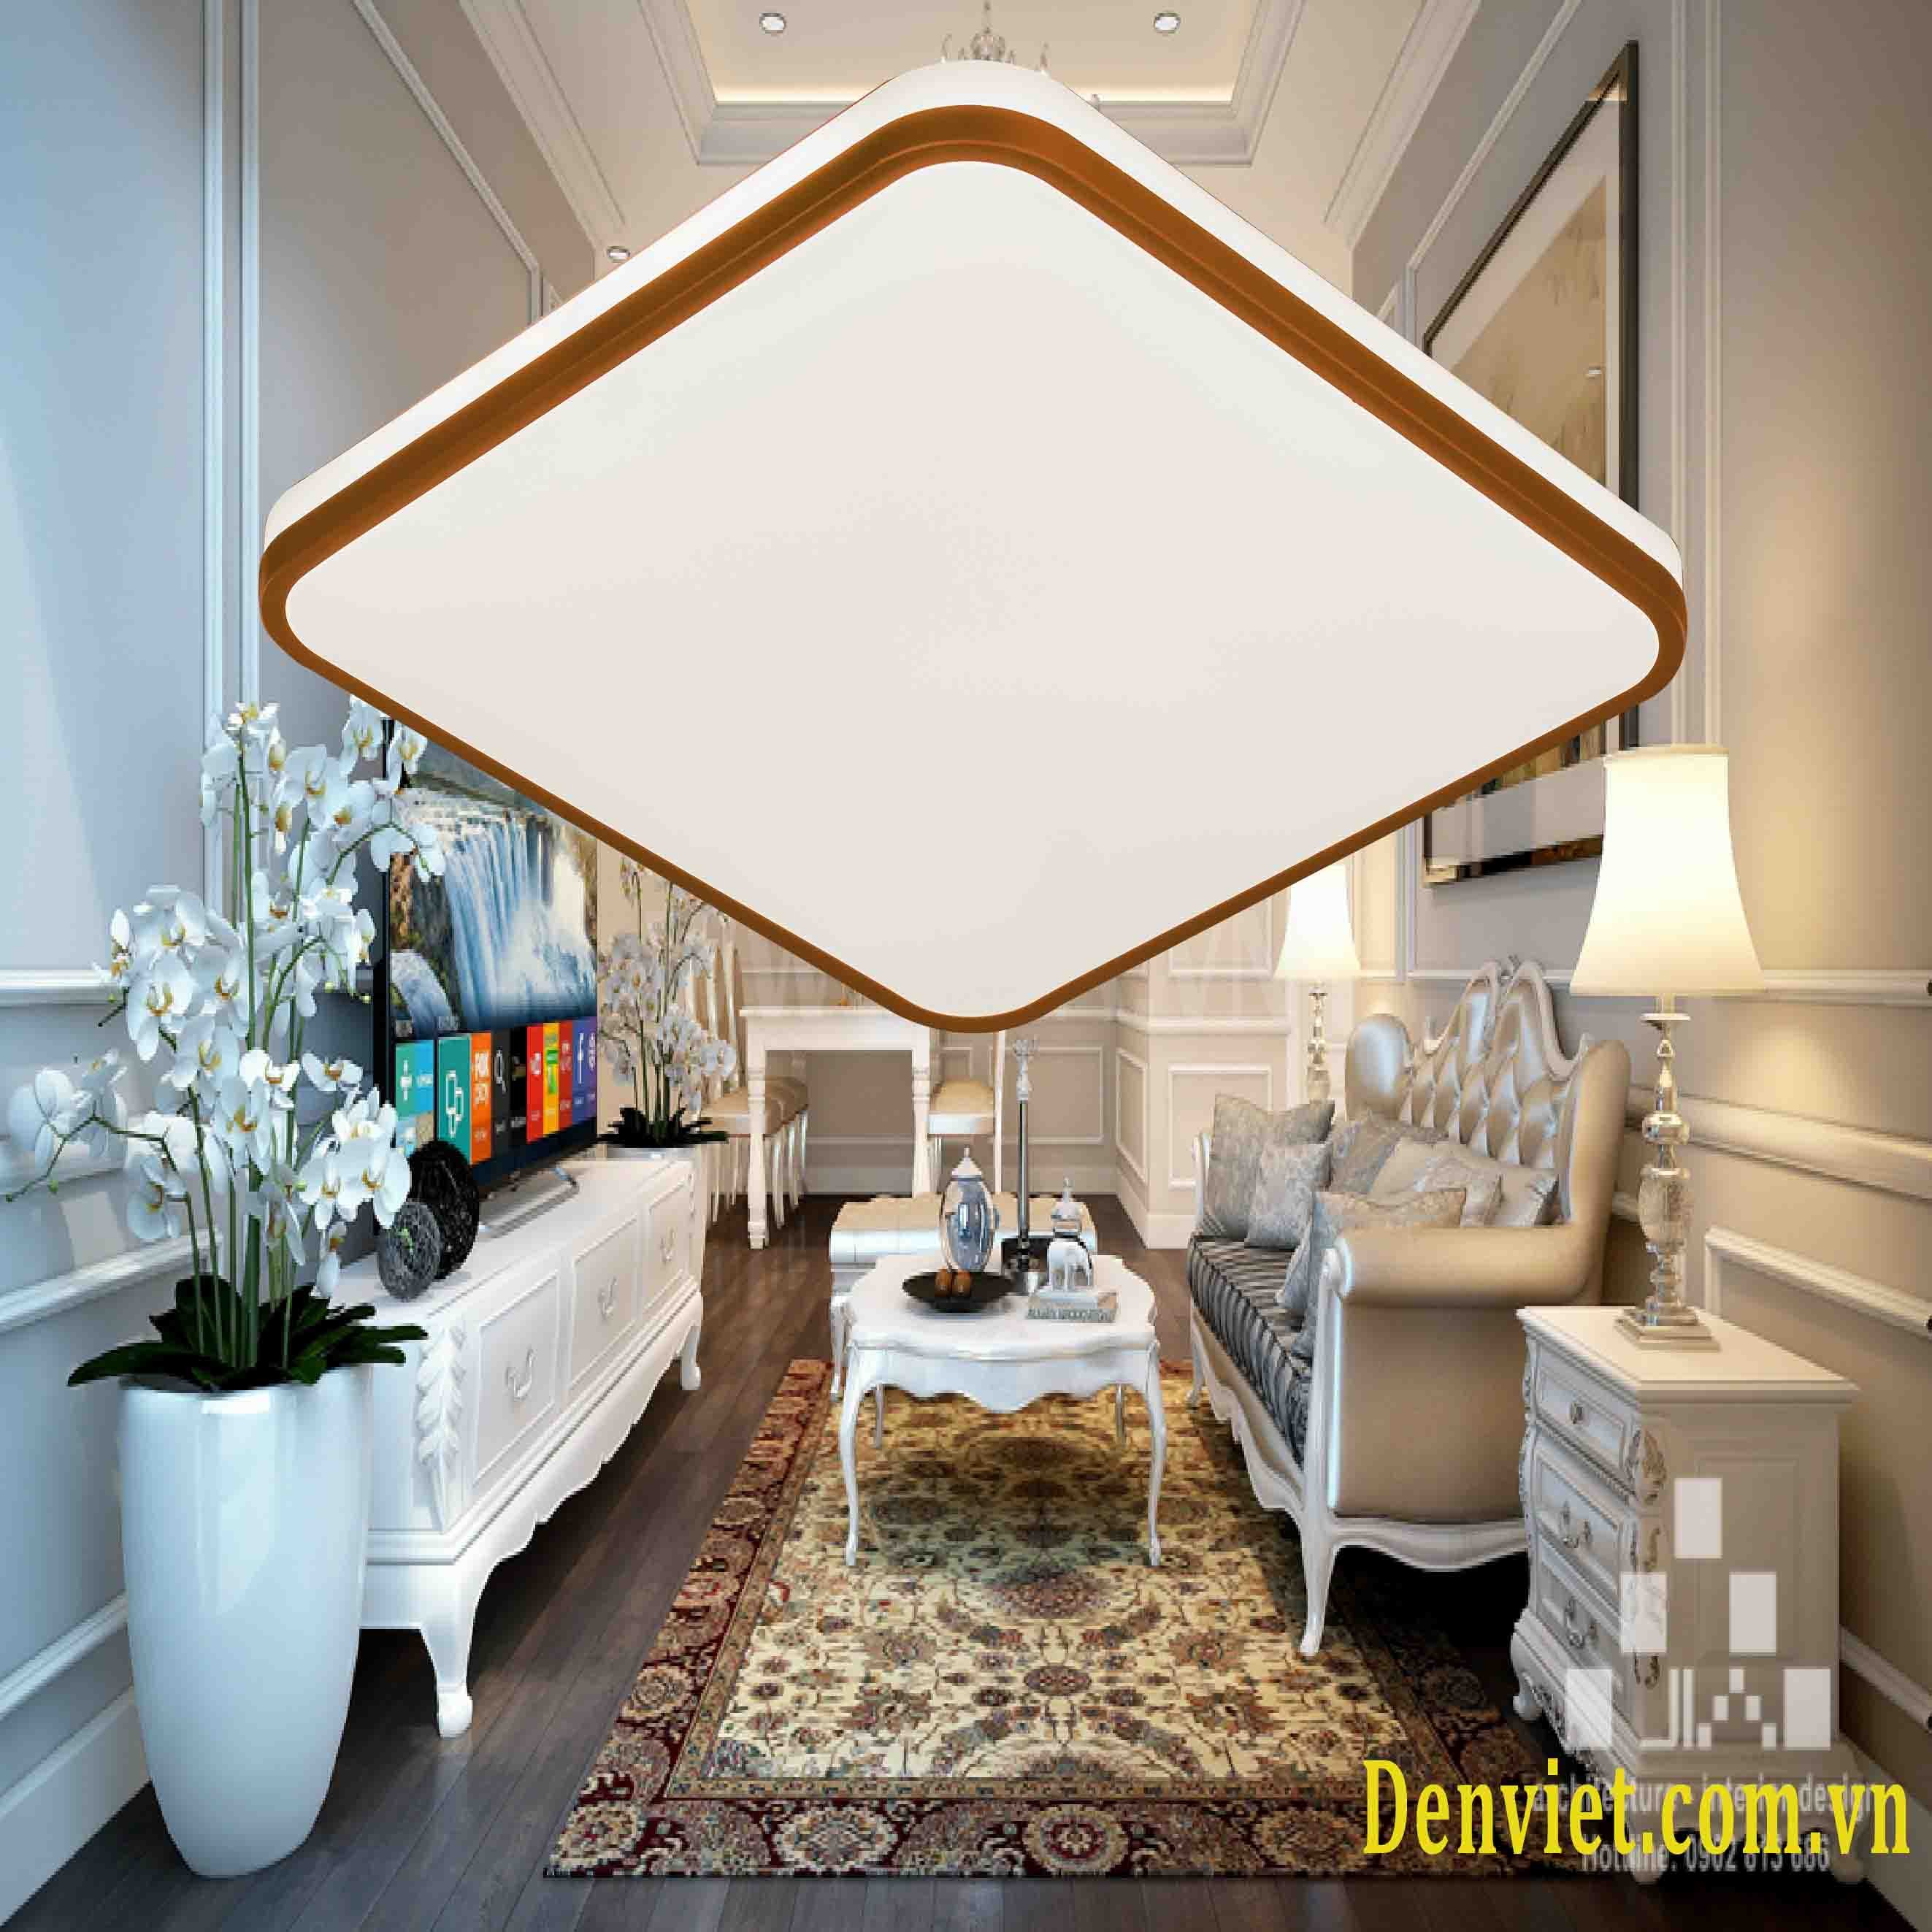 Thêm đèn áp trần vuông vào phòng khách của bạn sẽ tạo ra một không gian rộng rãi, hiện đại và thân thiện hơn. Đèn áp trần vuông mang lại ánh sáng trung thực cho căn phòng của bạn, với thiết kế hiện đại, nó sẽ đem lại cho bạn trải nghiệm khó quên. Đến và xem một số mẫu đèn áp trần vuông để tìm cho mình sản phẩm hoàn hảo nhất!